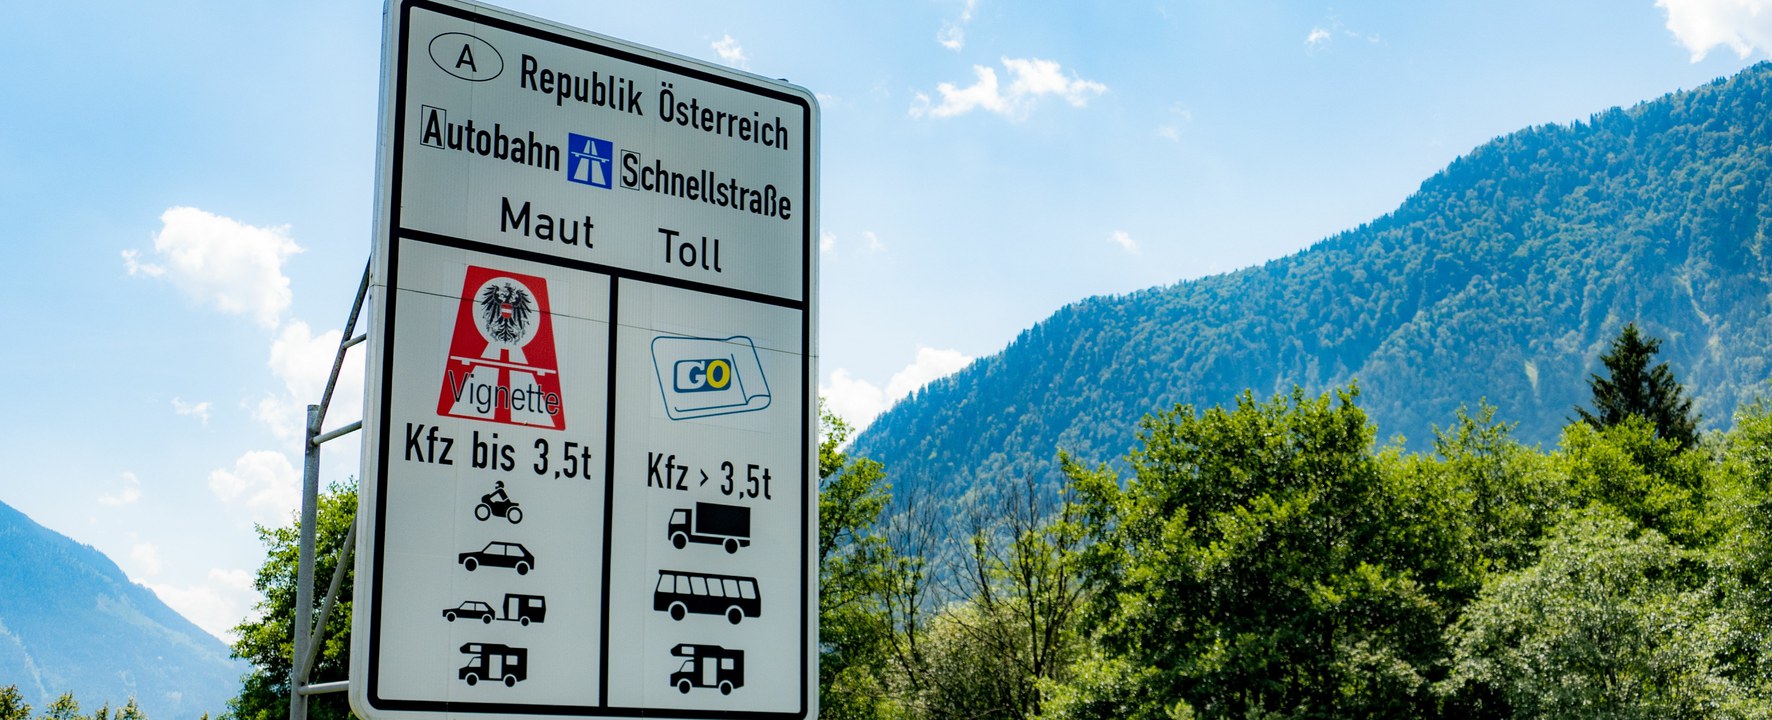 Image of Autobahngebühren